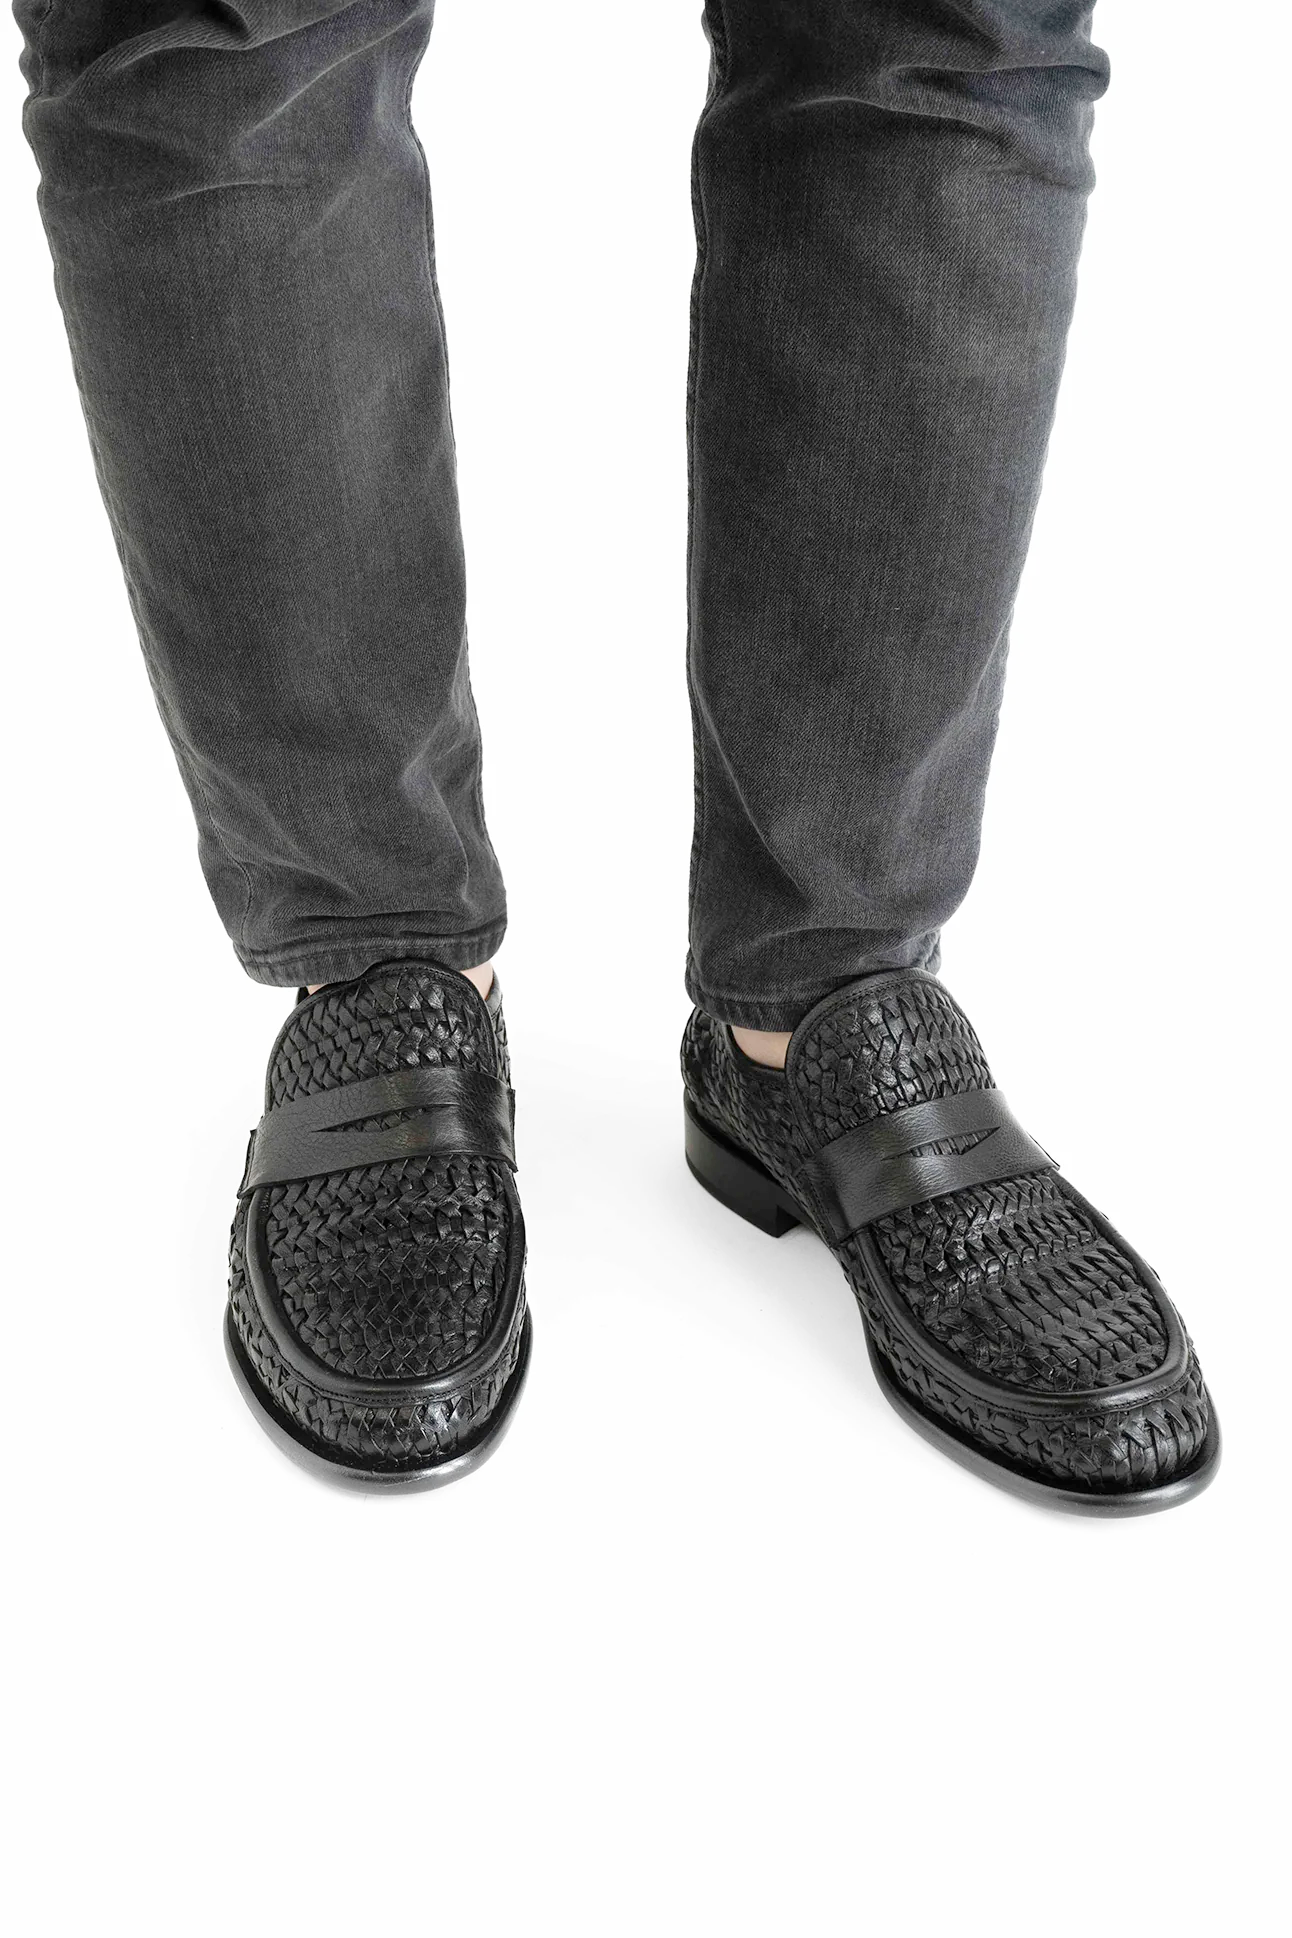 Enrico loafers, sort læder